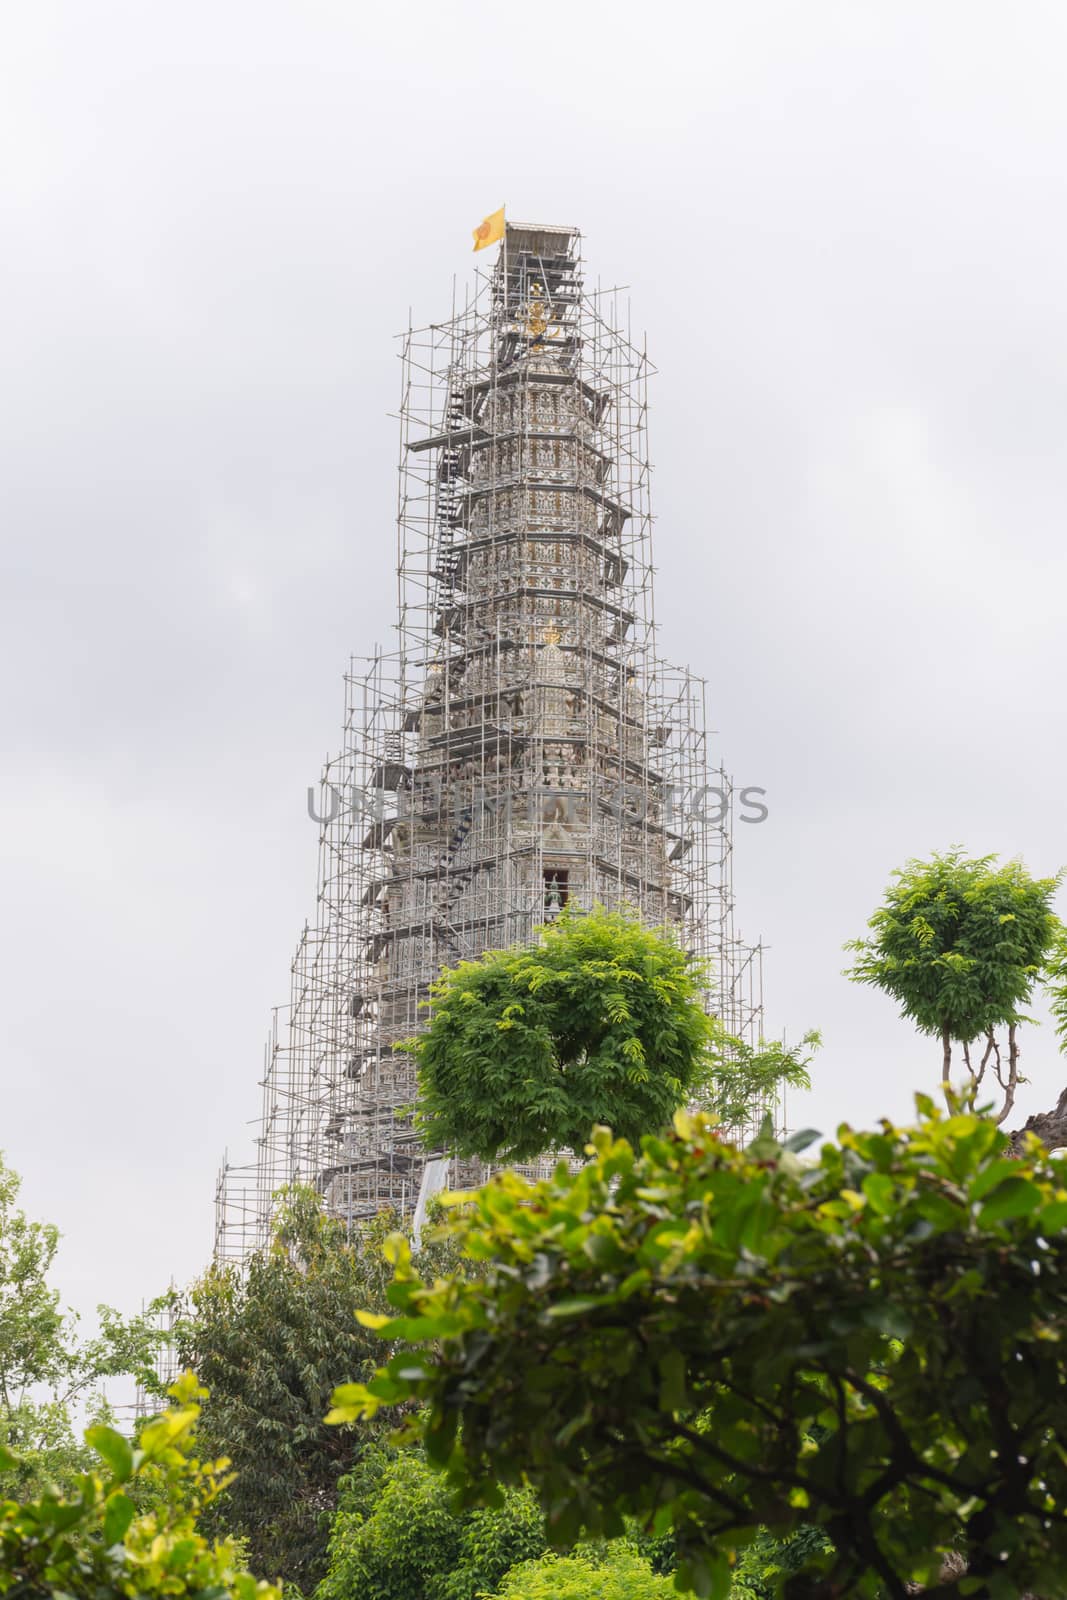 Thai pagoda repairing in temple (Wat Arun Ratchawararam) by PongMoji